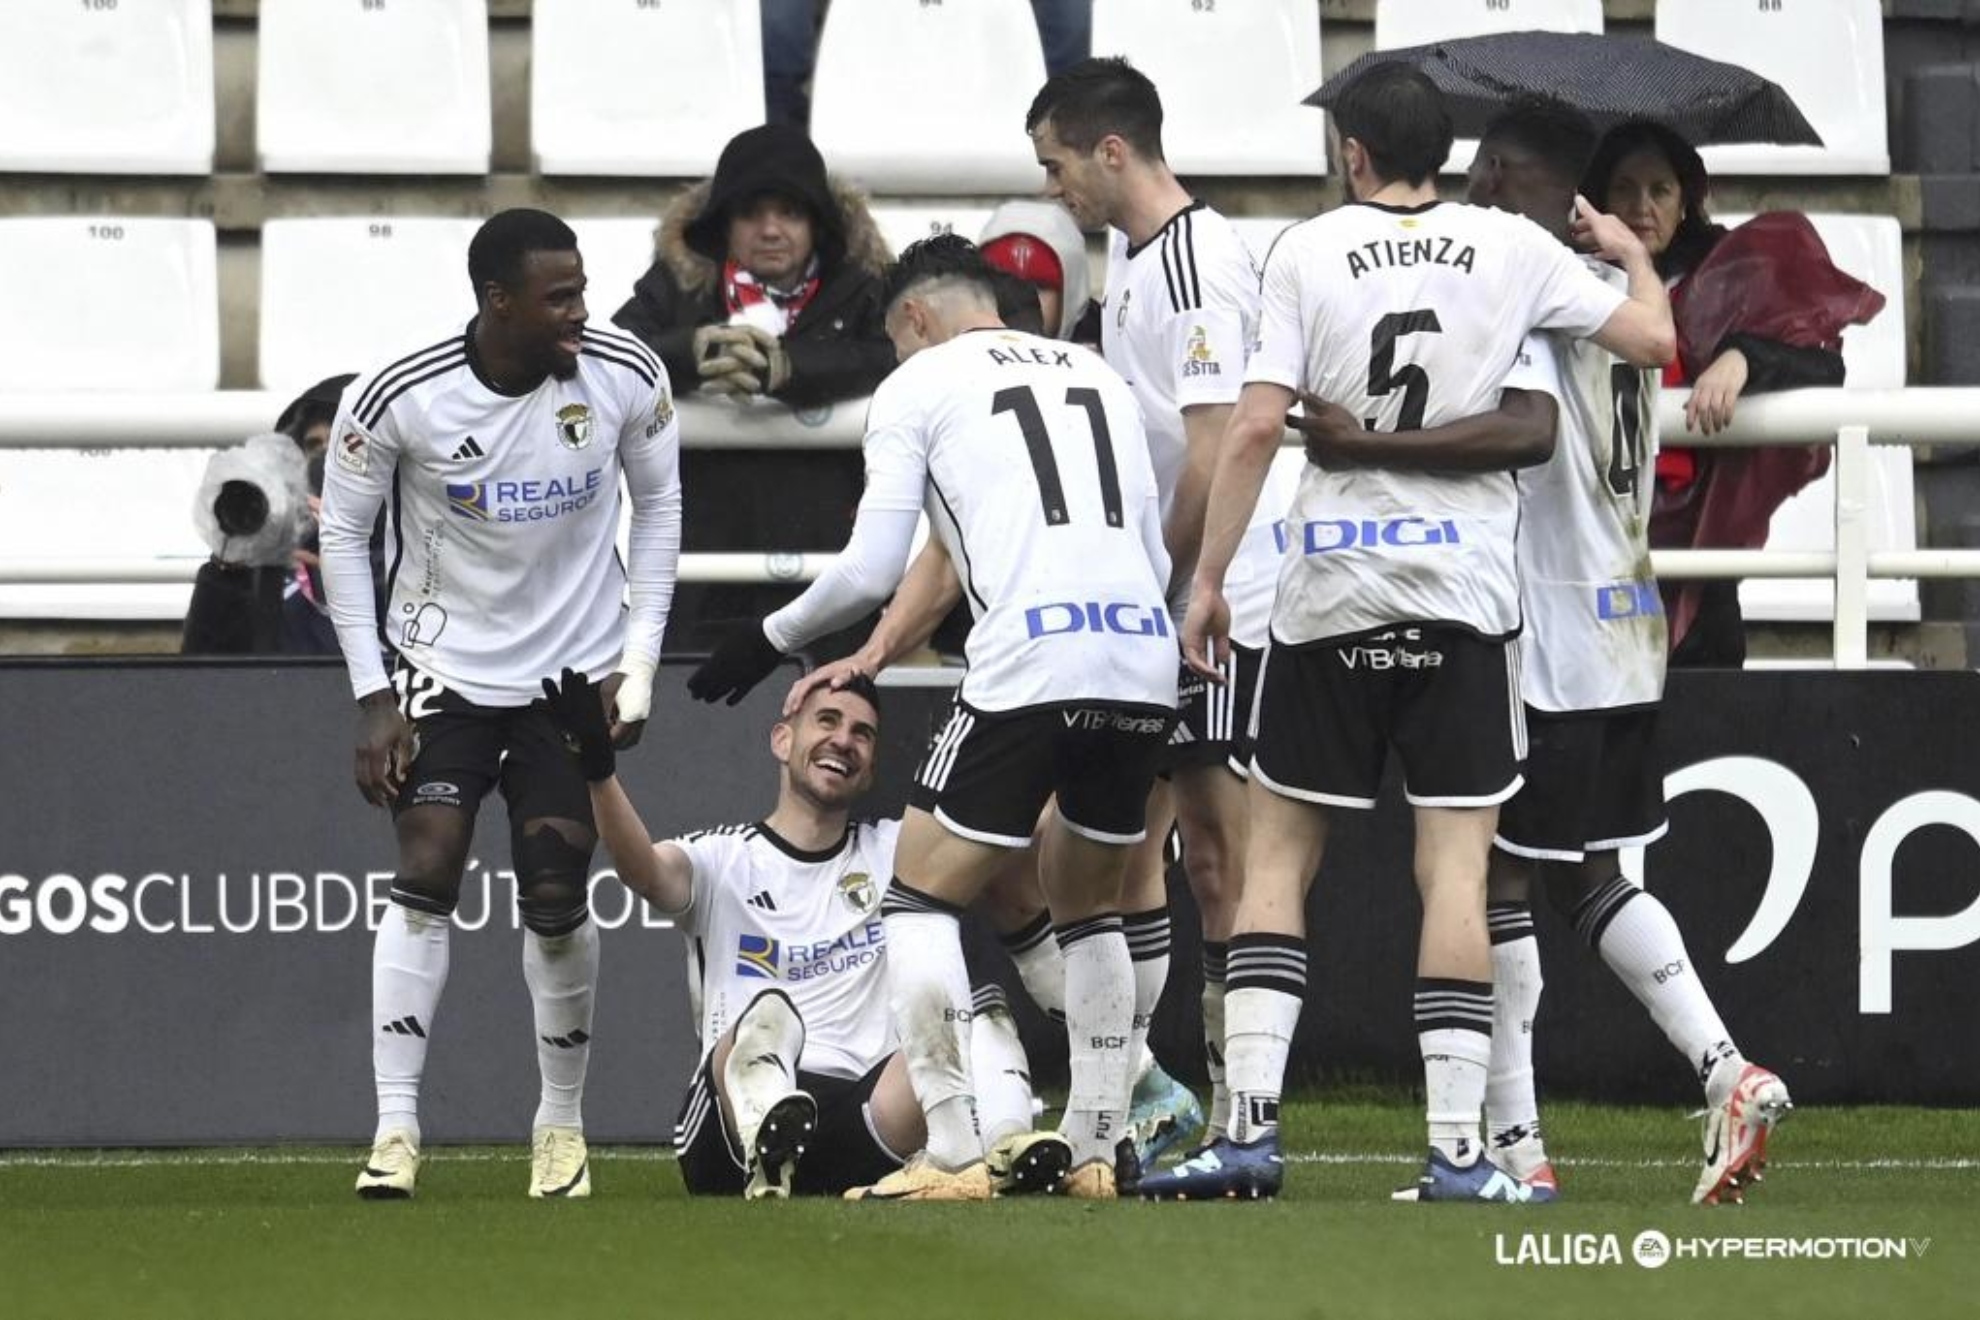 Los jugadores del Burgos, con Dani Ojeda como protagonsita, celebran el gol marcado al Sproting.